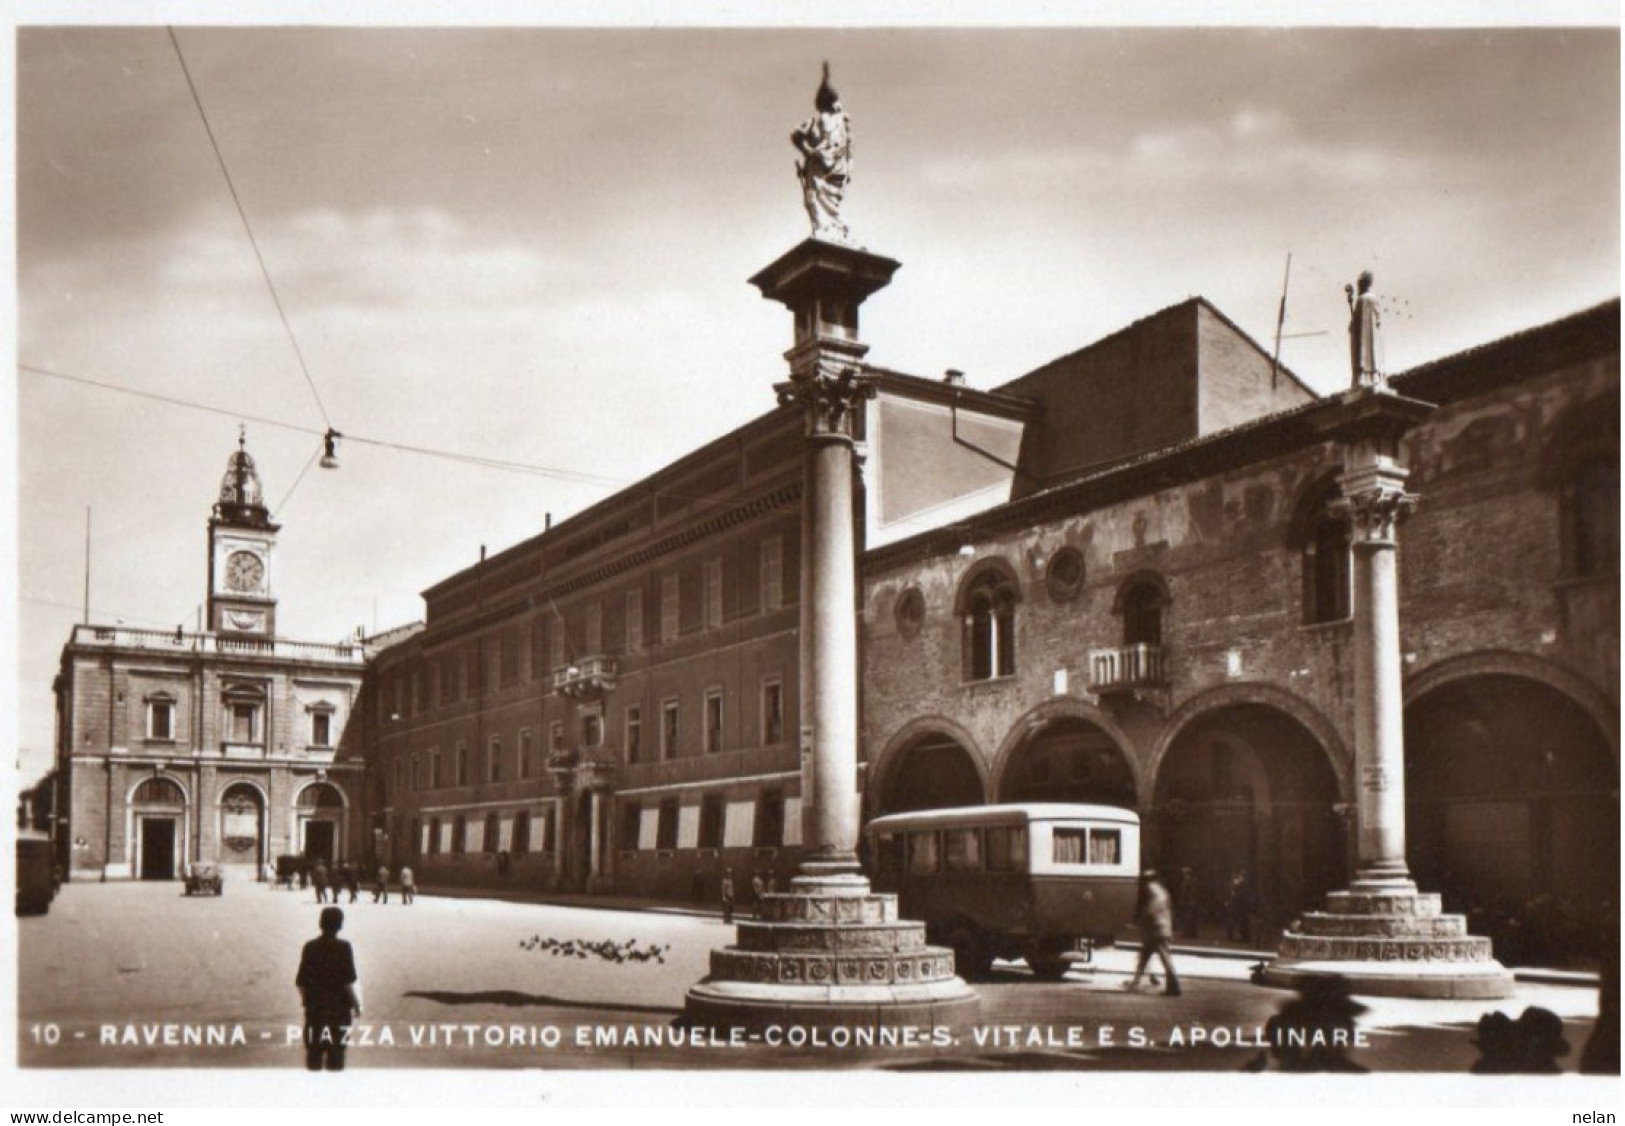 RAVENNA - PIAZZA VITTORIO EMANUELE - COLONNE S. VITALE E S. APOLLINARE - F.P. - Ravenna